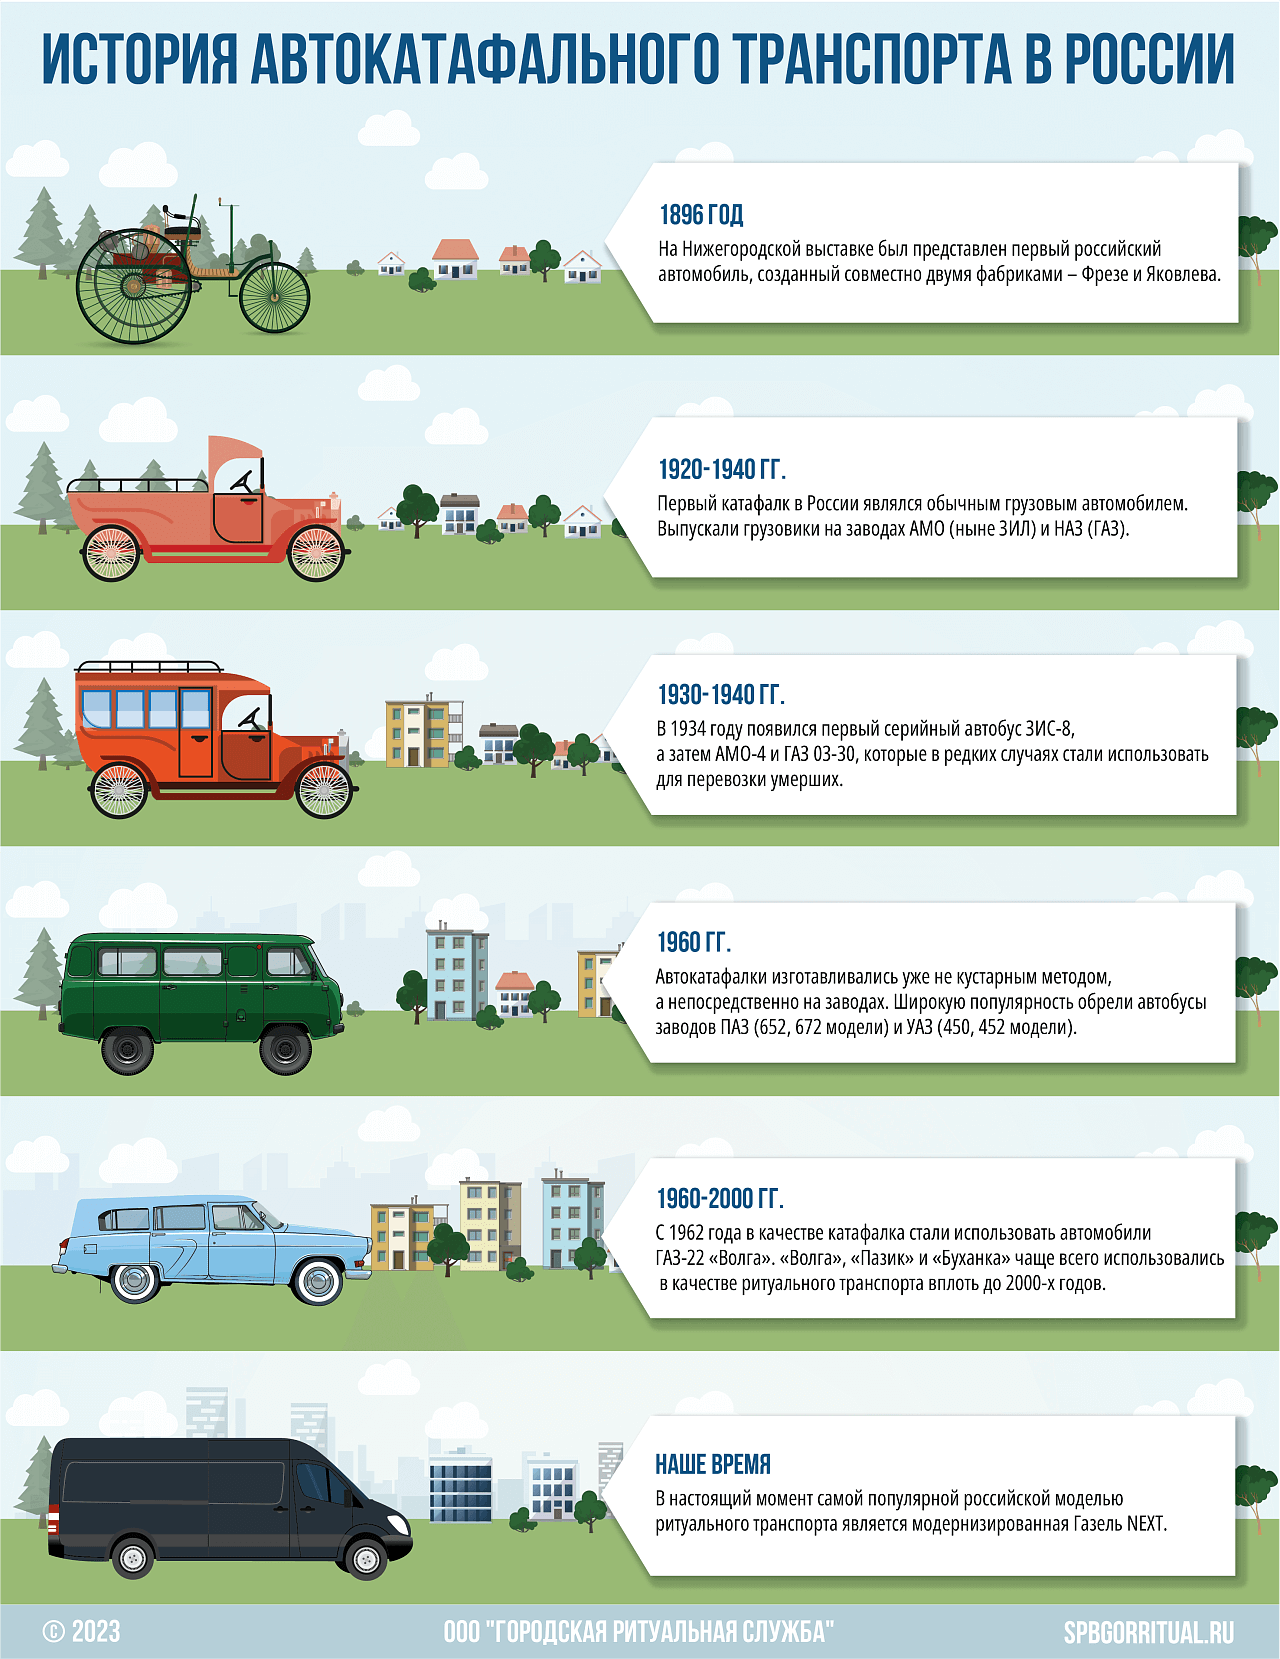 История автокатафального транспорта в России